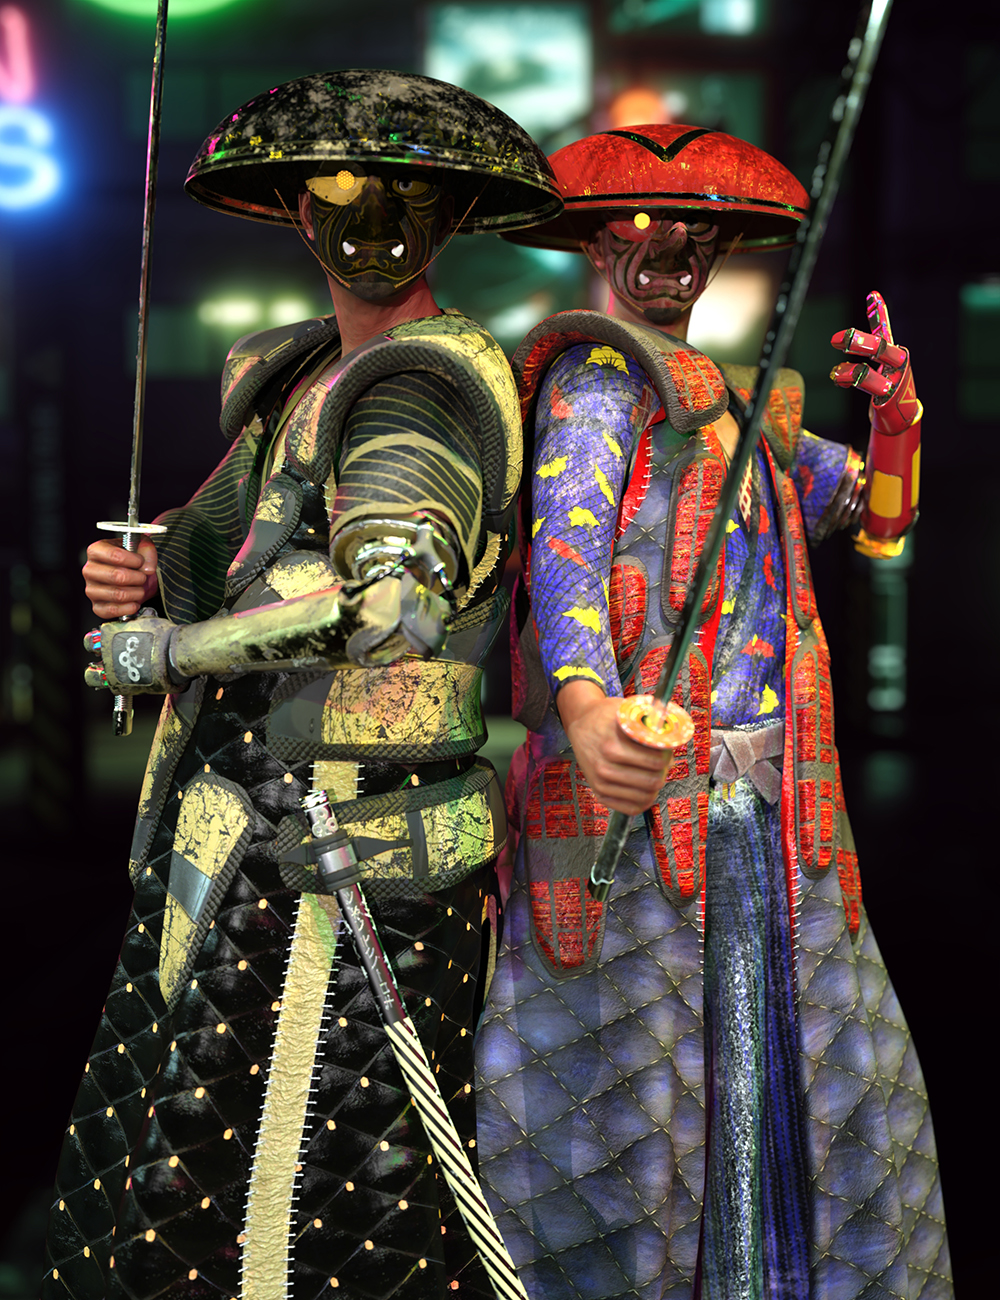 Street Sweeper - Cyber Samurai for Genesis 8 Male by: Sixus1 Media, 3D Models by Daz 3D